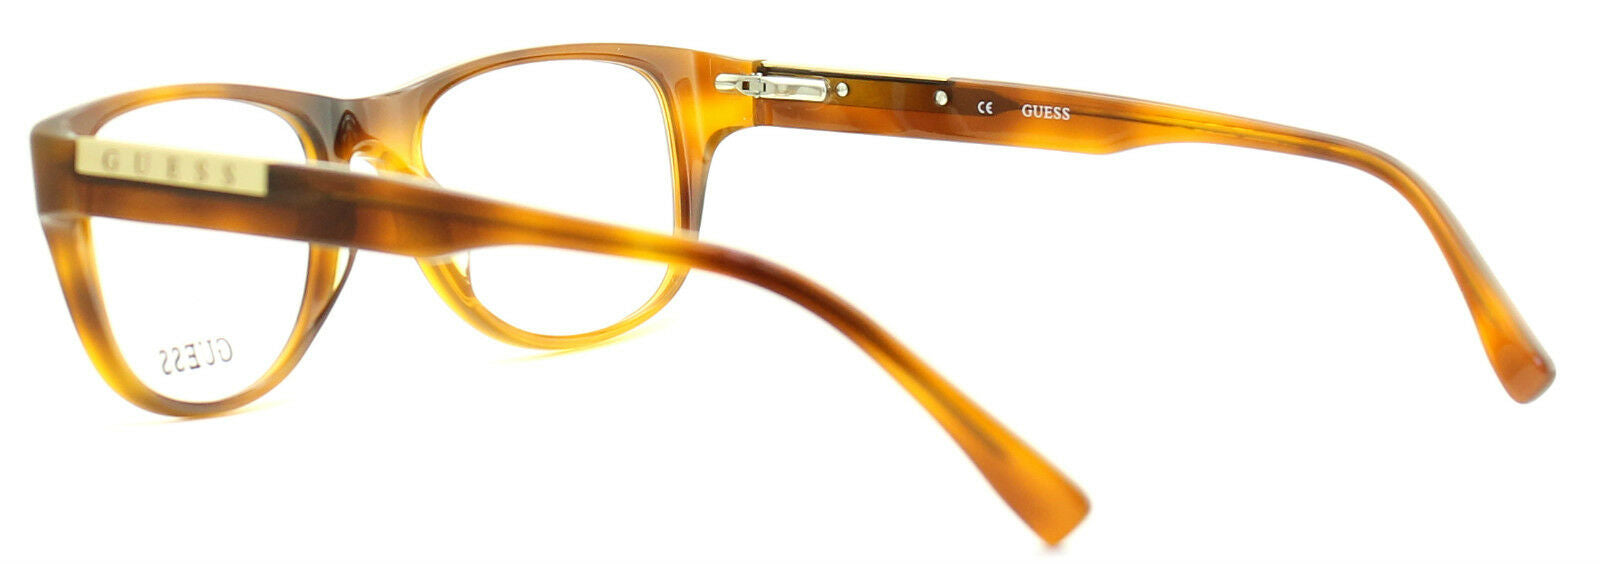 GUESS GU1737 HNY Eyewear FRAMES NEW Eyeglasses RX Optical BNIB New - TRUSTED